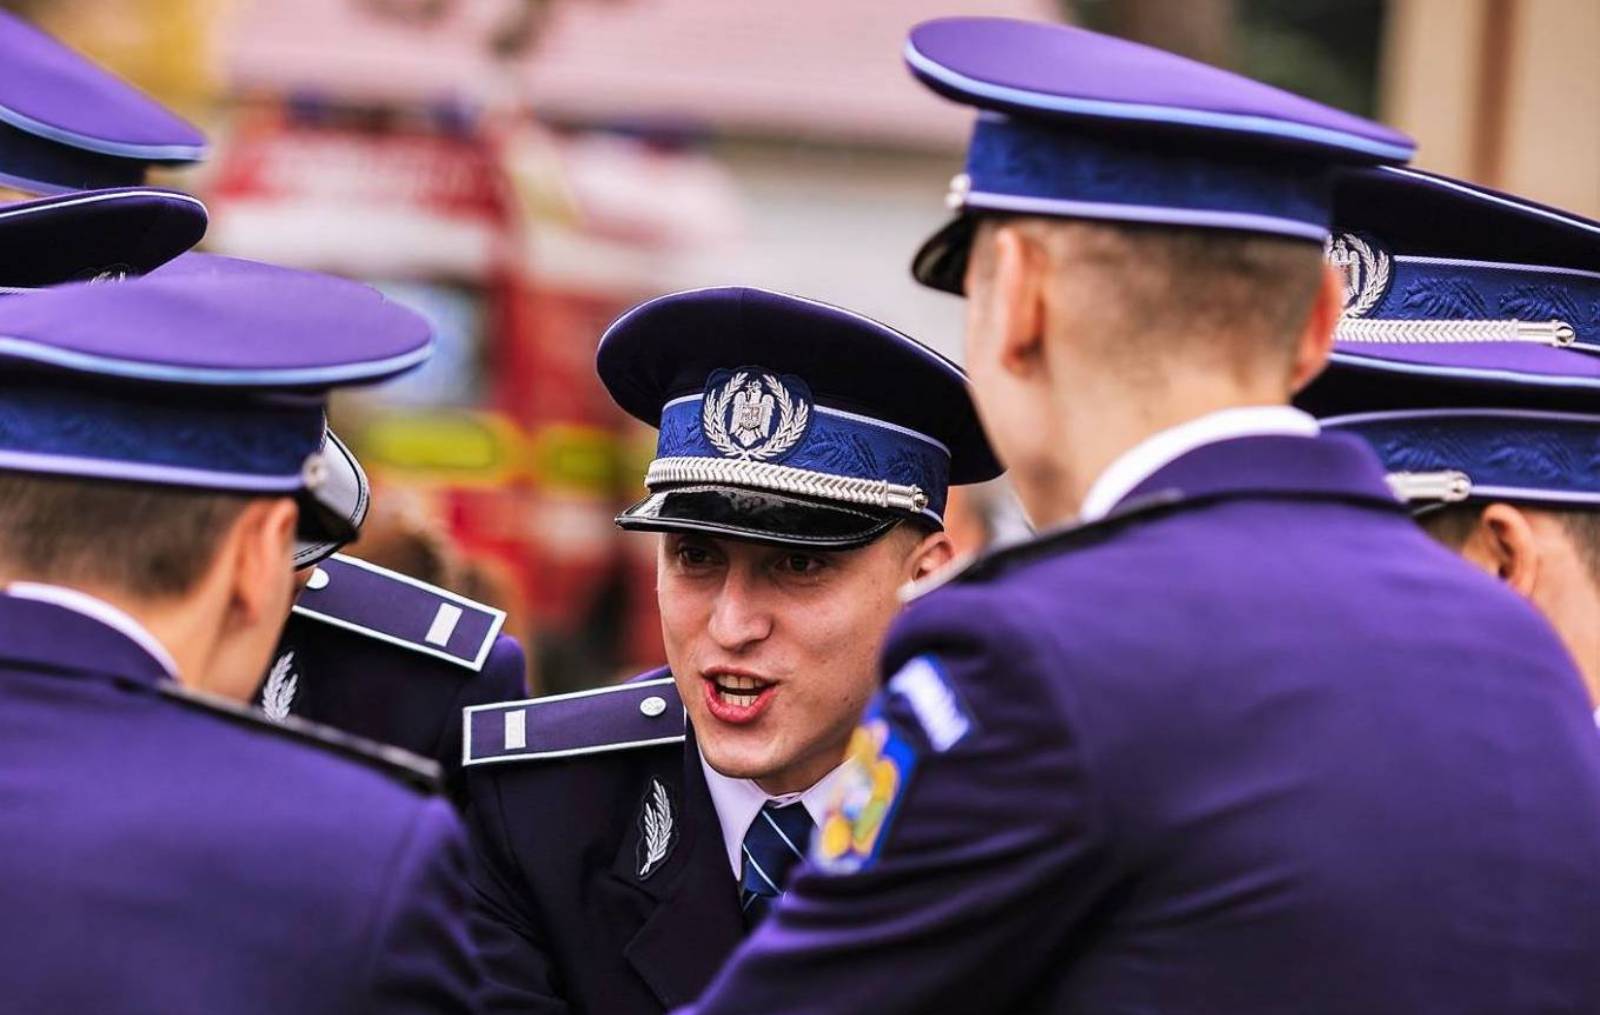 Wochenendempfehlung der rumänischen Polizei